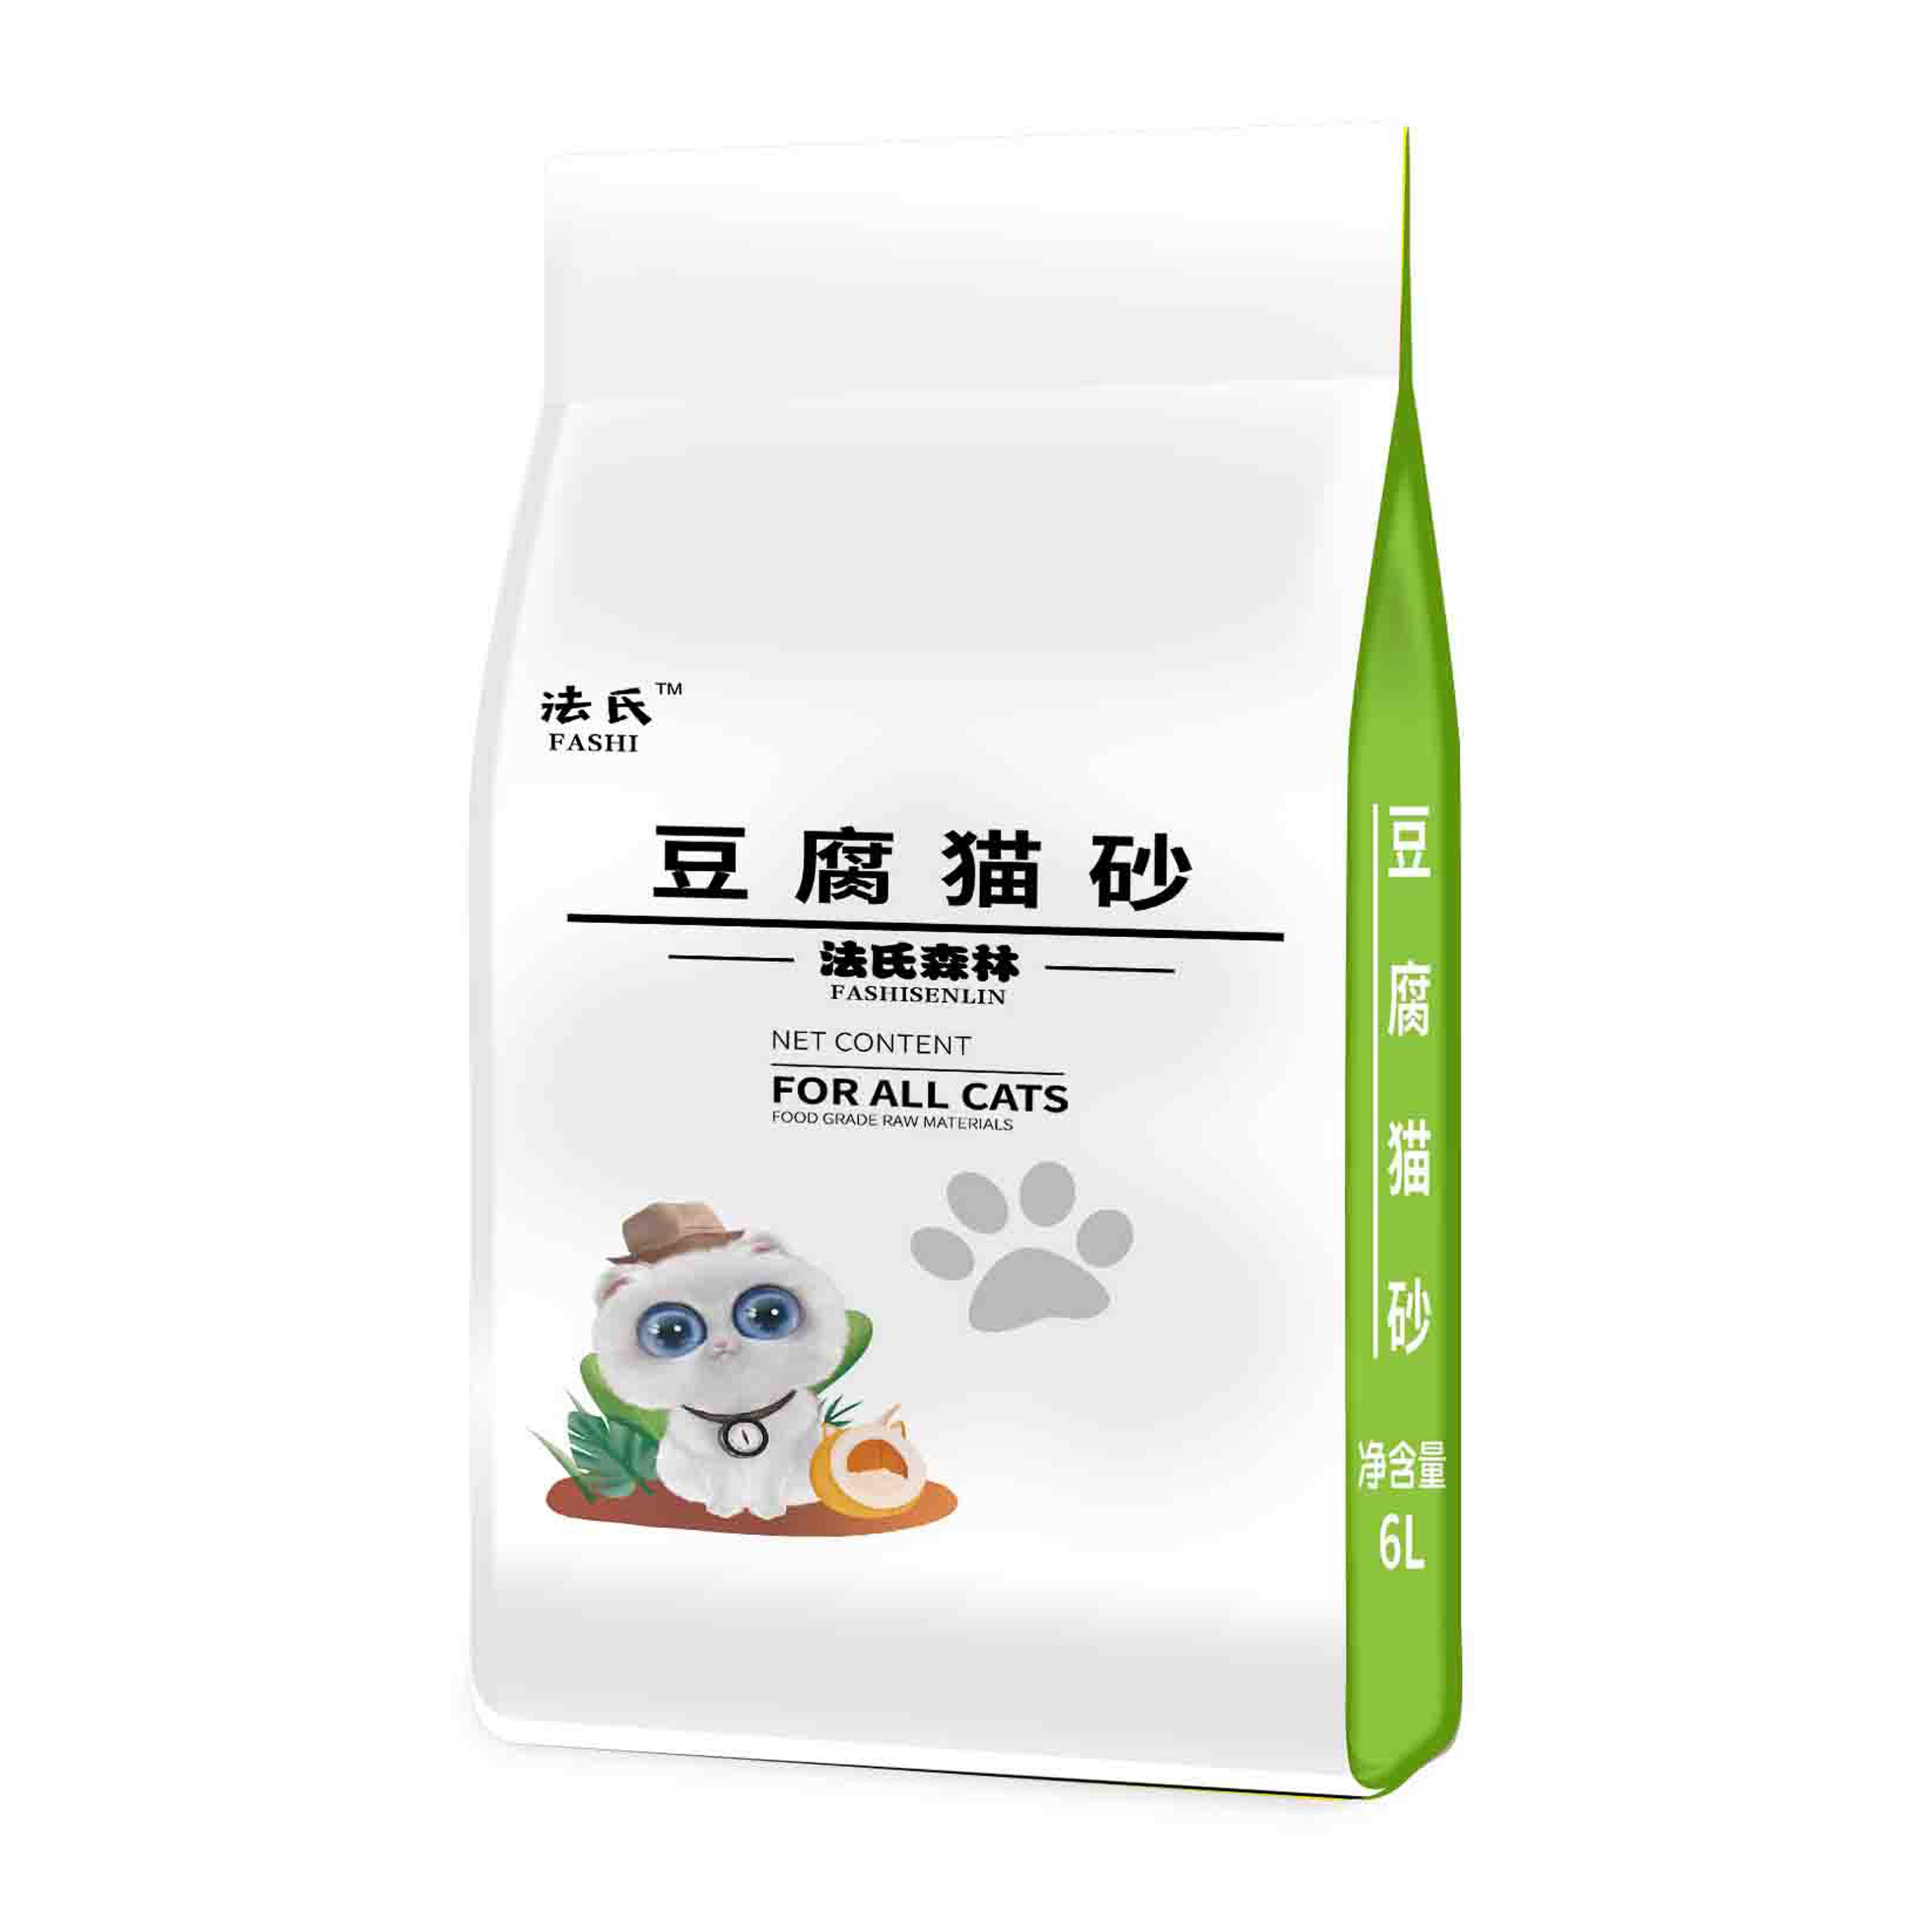 法氏 混合猫砂 经典奶香 2.5kg 6.31元